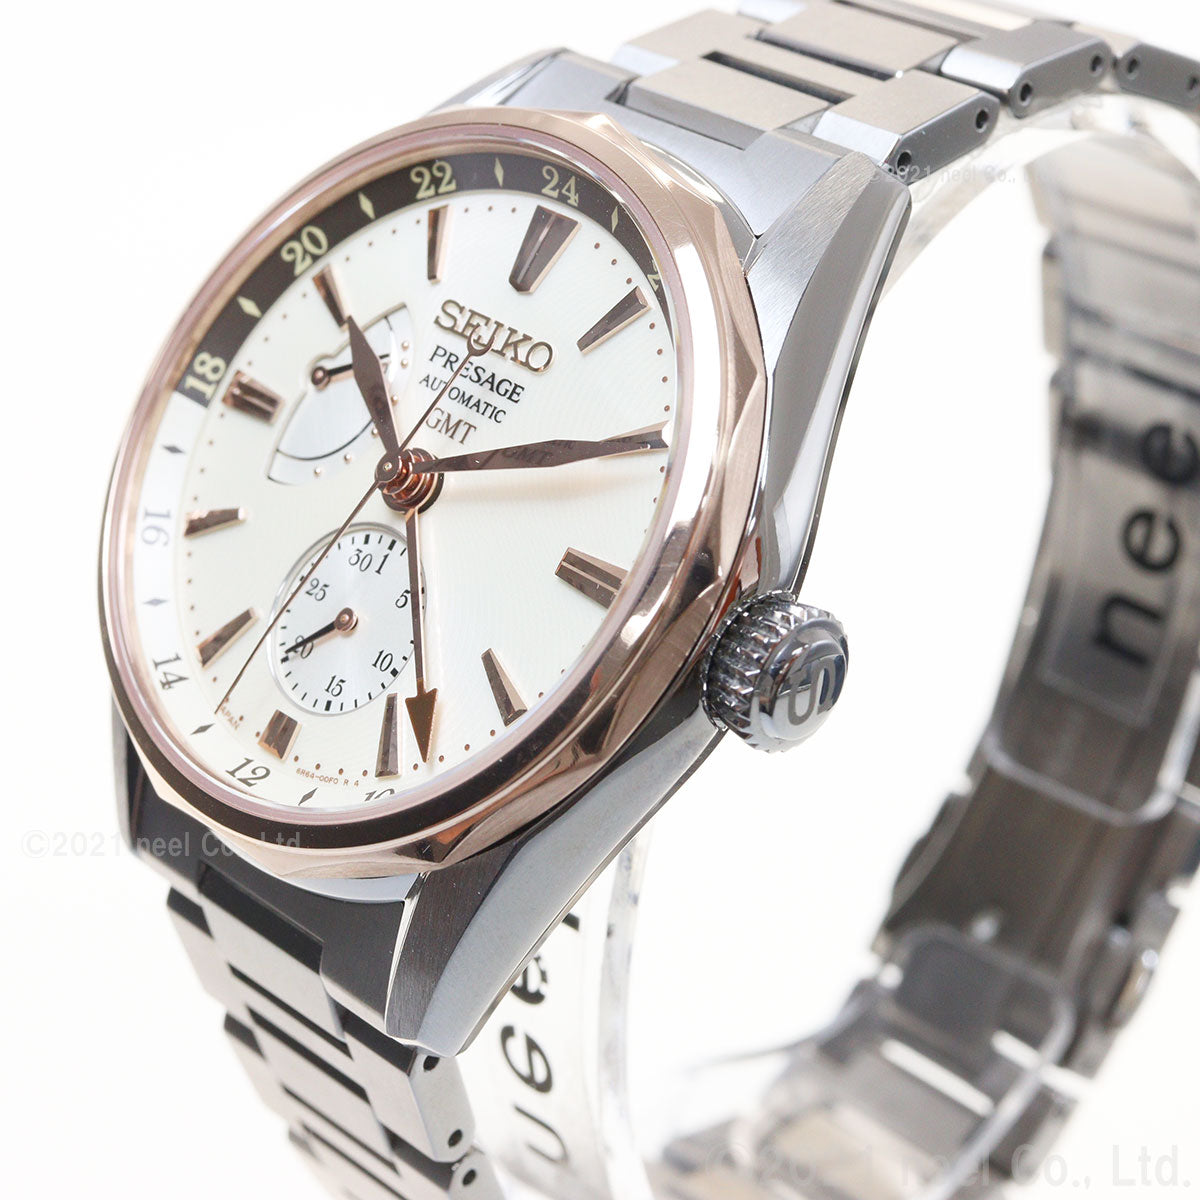 セイコー プレザージュ SEIKO PRESAGE 自動巻き メカニカル コアショップ専用 腕時計 メンズ プレステージライン SARF012